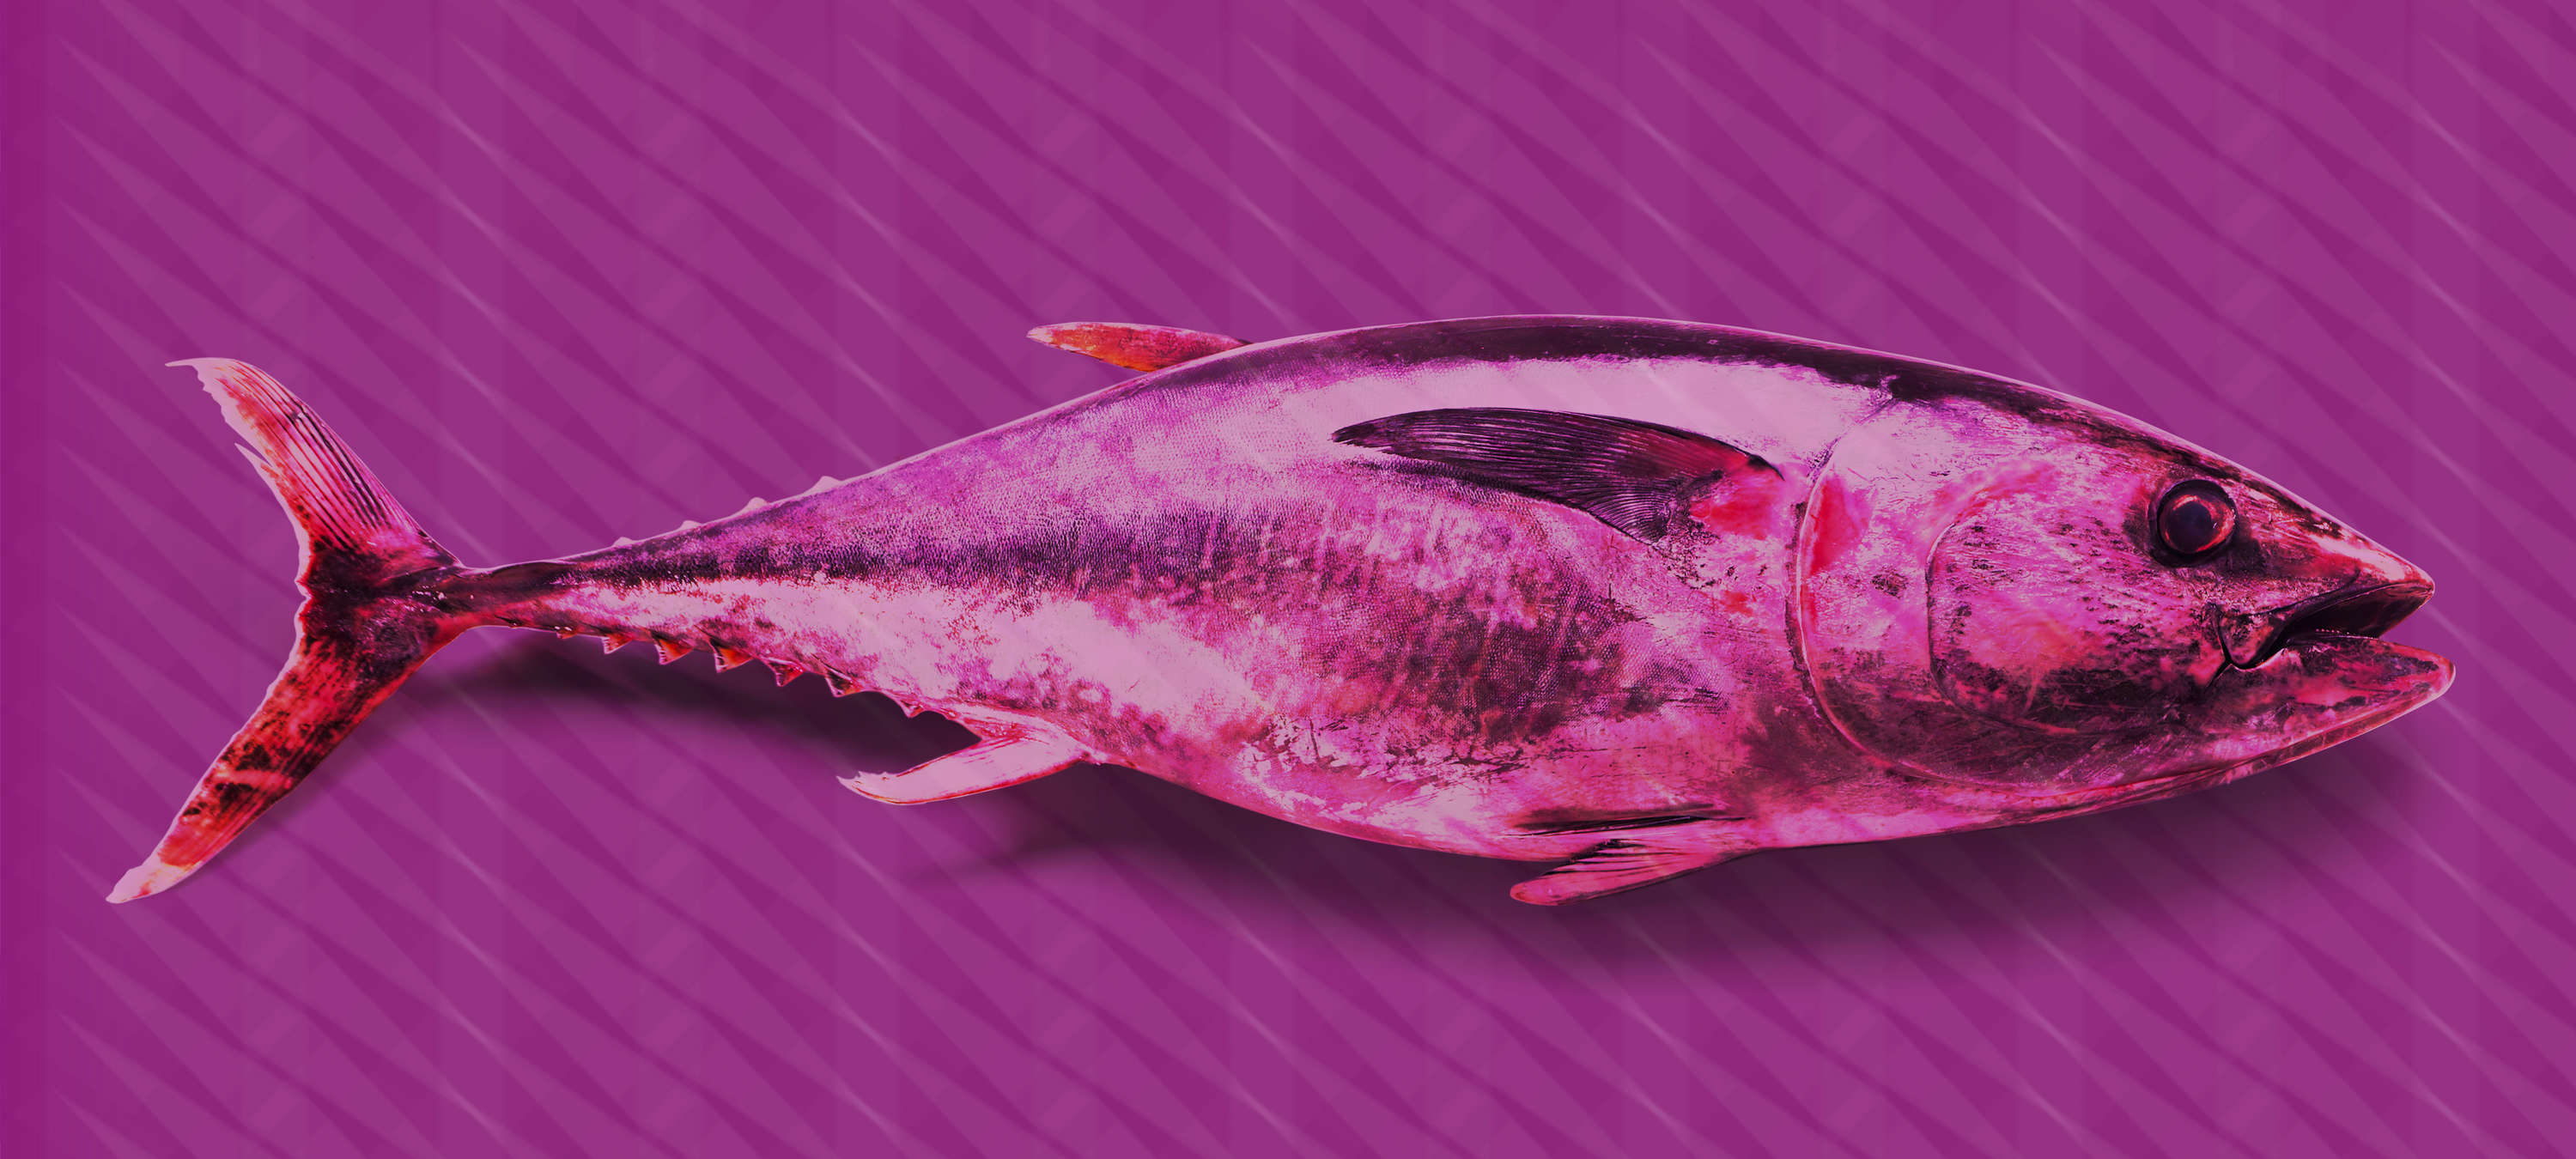             Papel pintable Atún estilo Pop Art - Violeta, Rosa, Rojo - tejido no tejido liso perlado
        